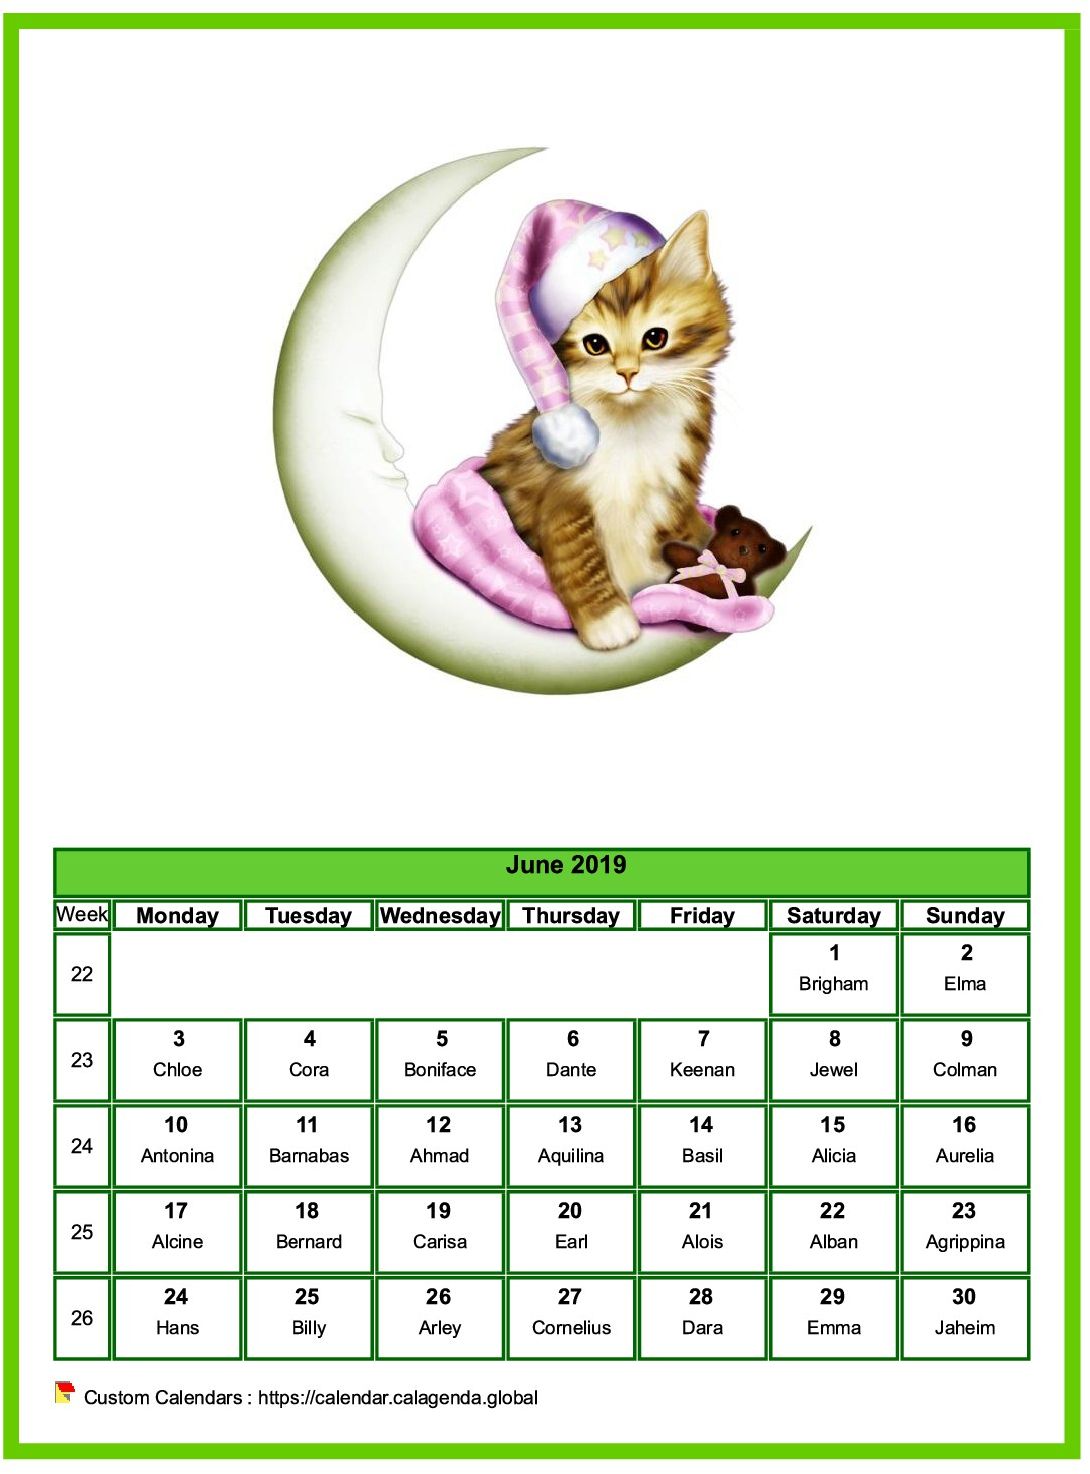 Calendar June 2019 cats